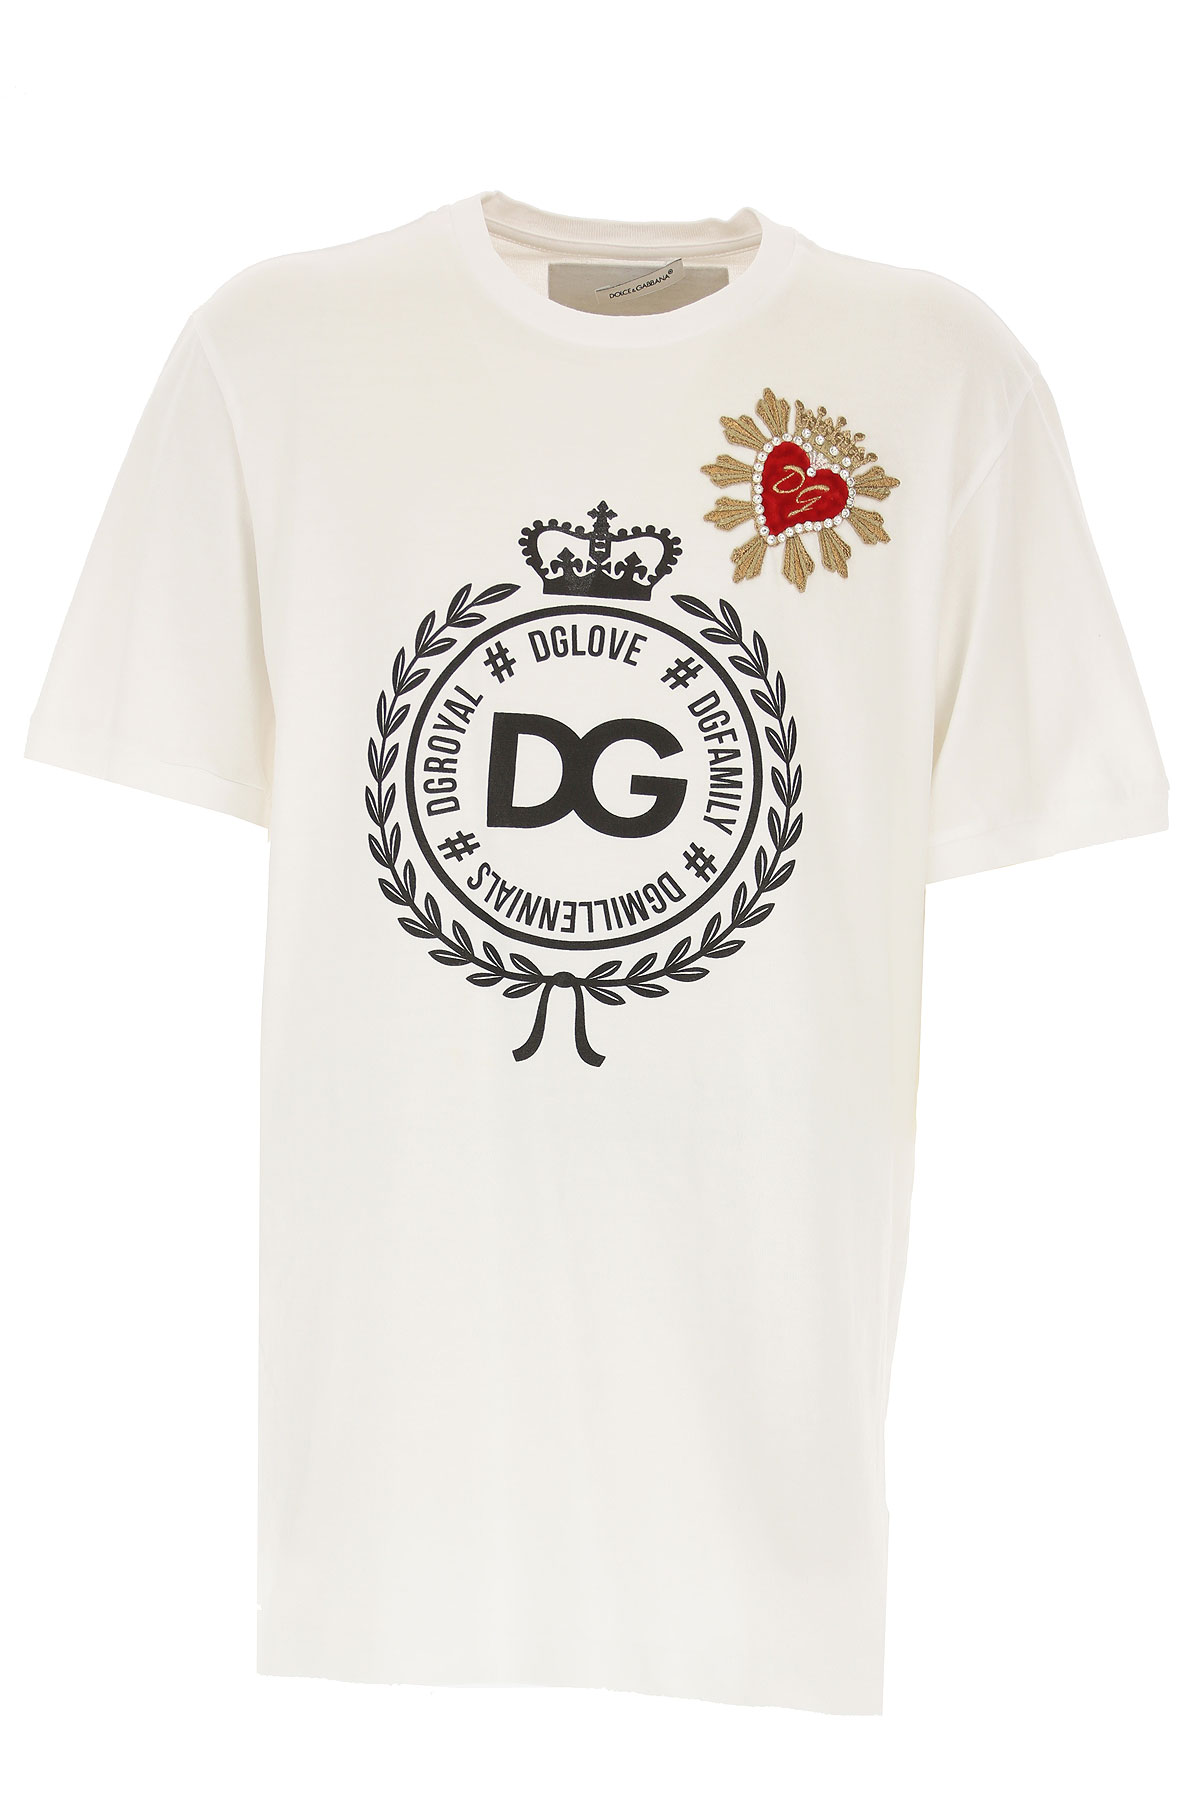 Dolce & Gabbana Kinder T-Shirt für Mädchen Günstig im Outlet Sale, Weiss, Baumwolle, 2017, 10Y 12Y 6Y 8Y